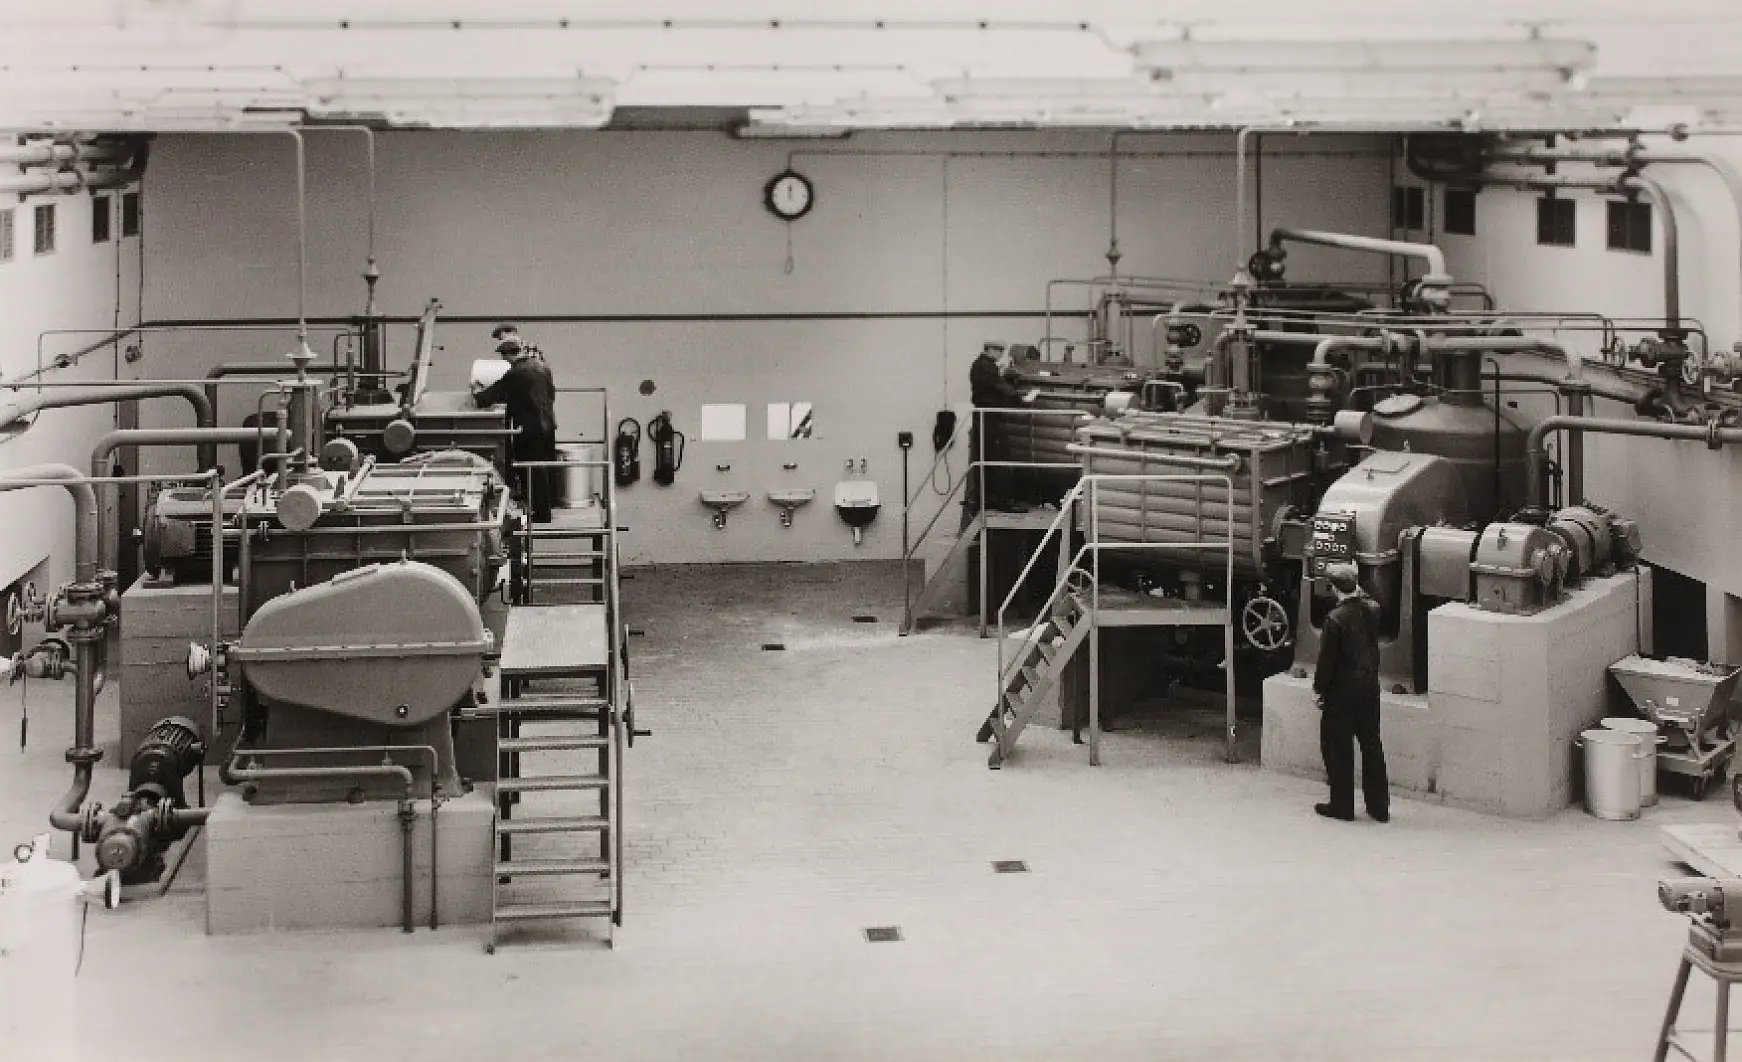 I 1961 fandt forberedelserne til fremstilling af klæbemidler med gummi, harpikser og andre råmaterialer sted i æltningsrummet.